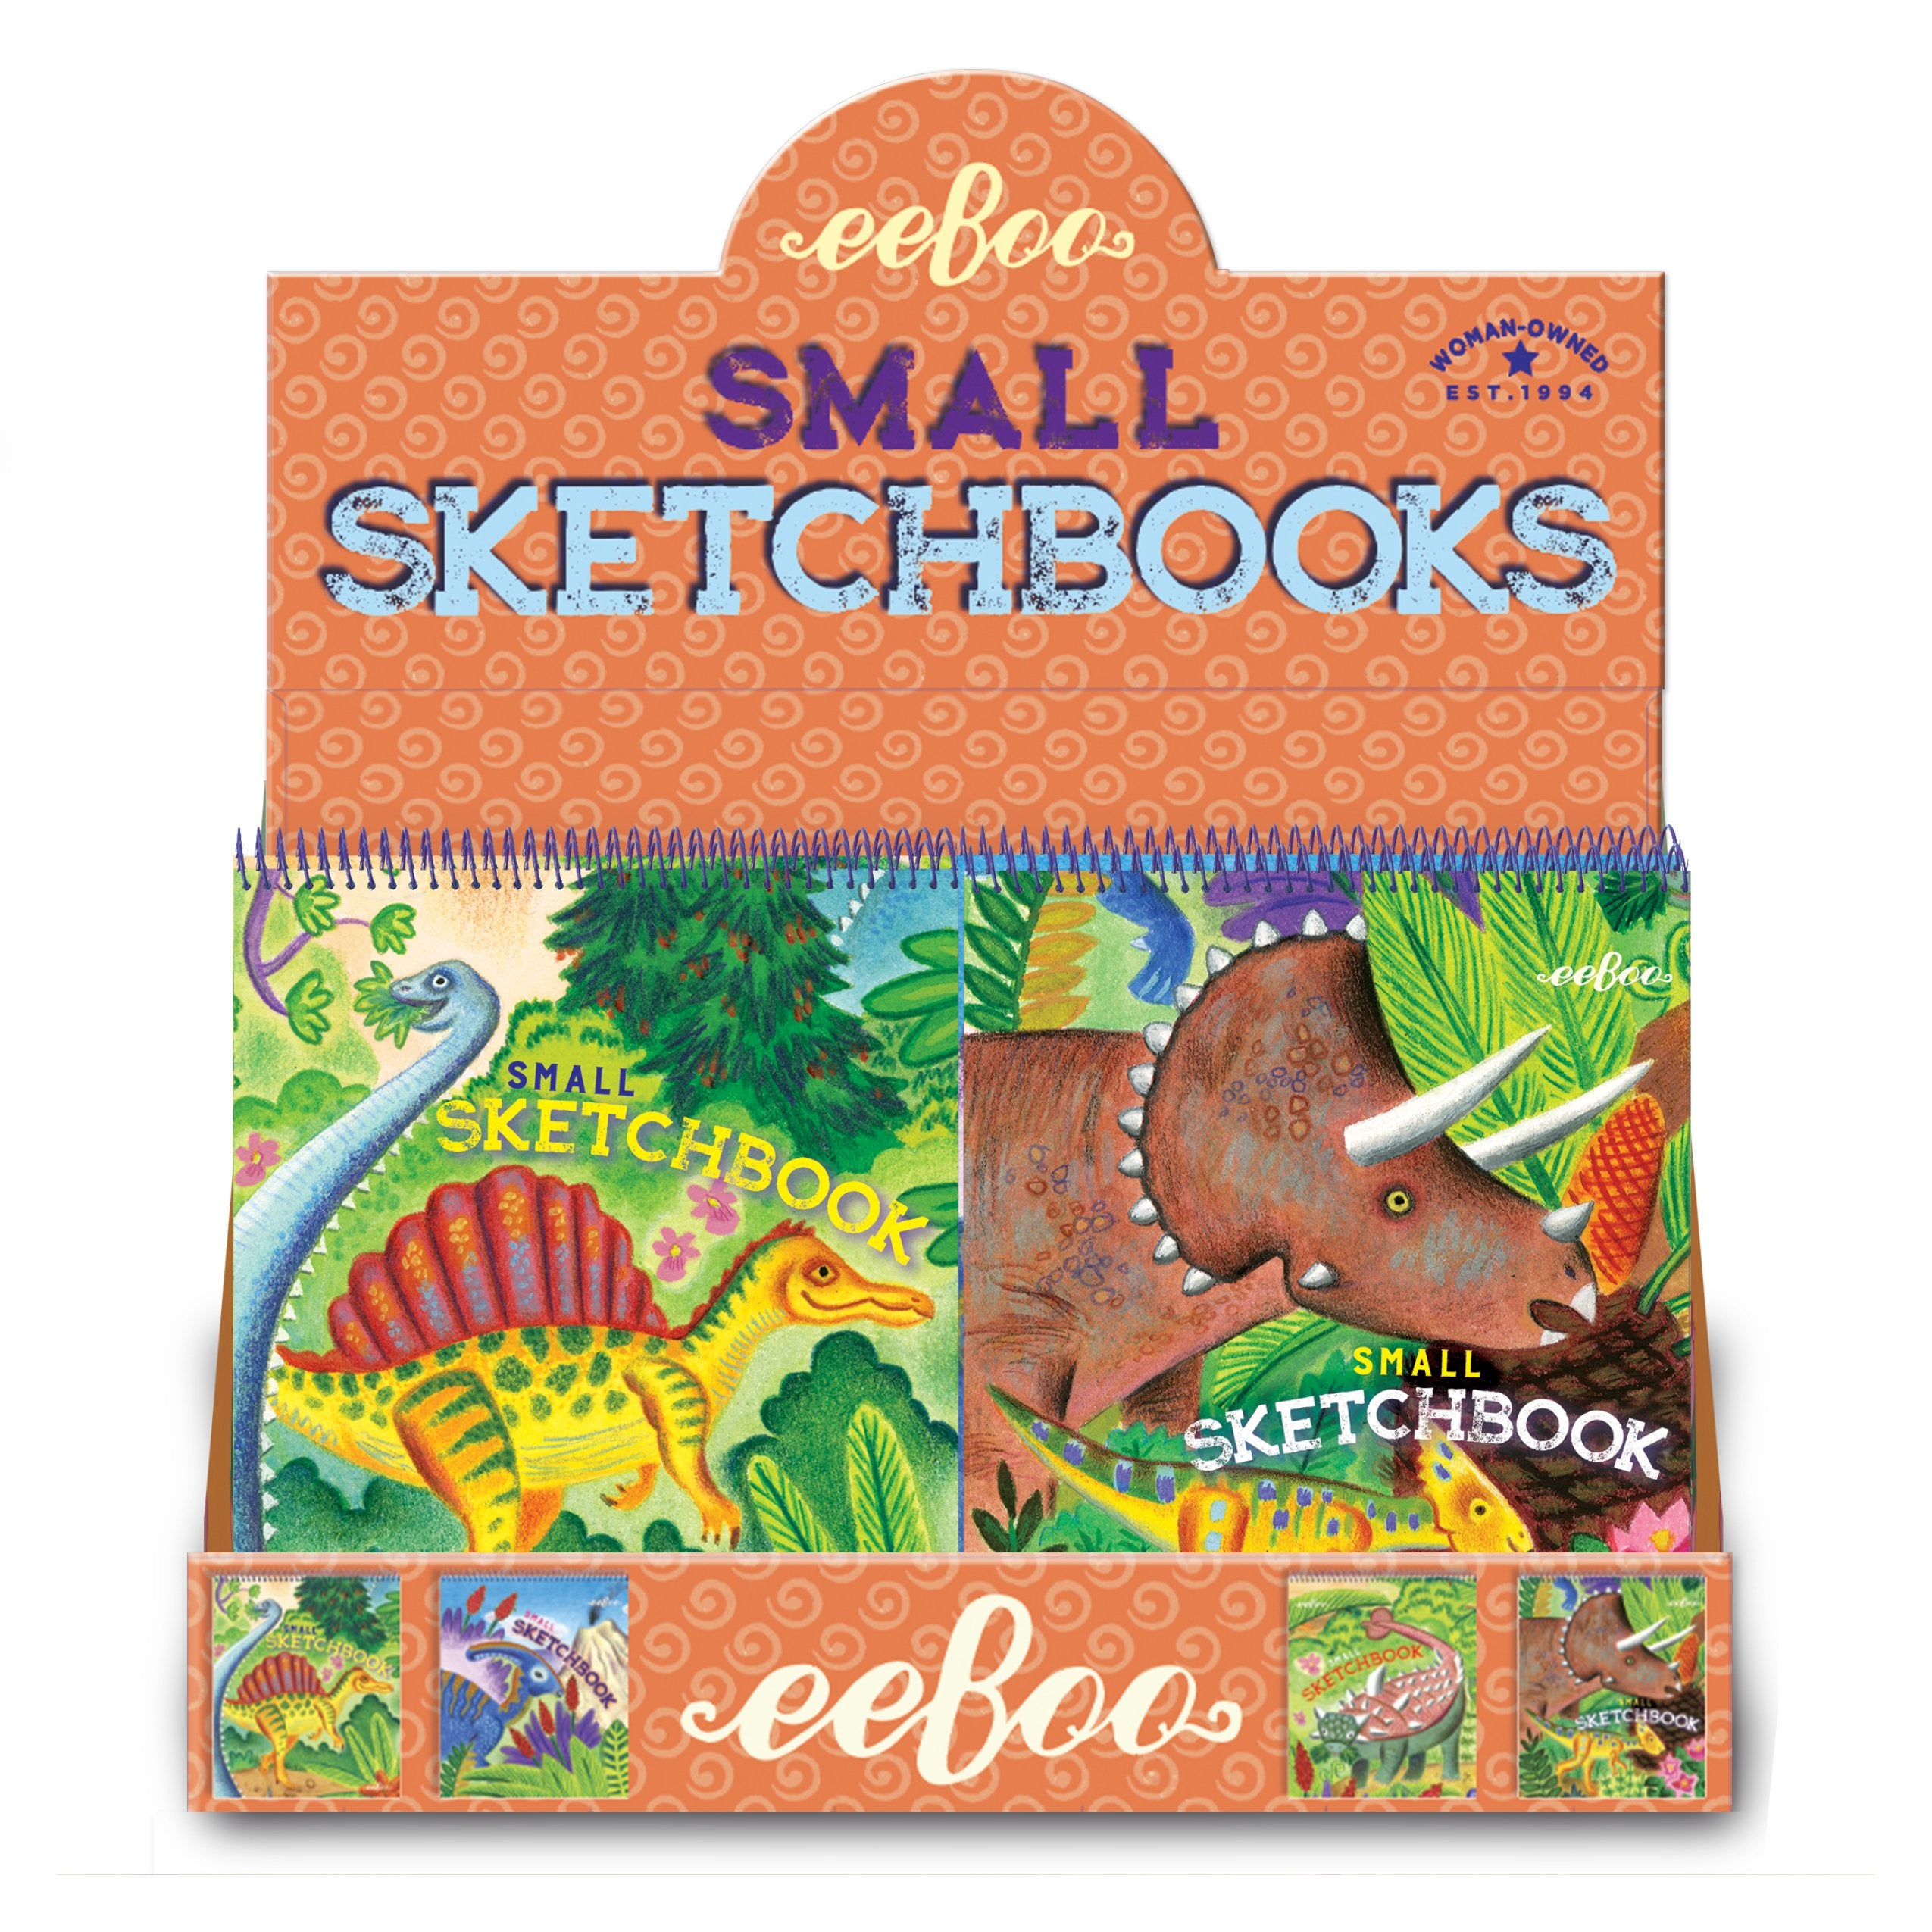 Eeboo Small Sketchbook Assortment Animals in the Wild